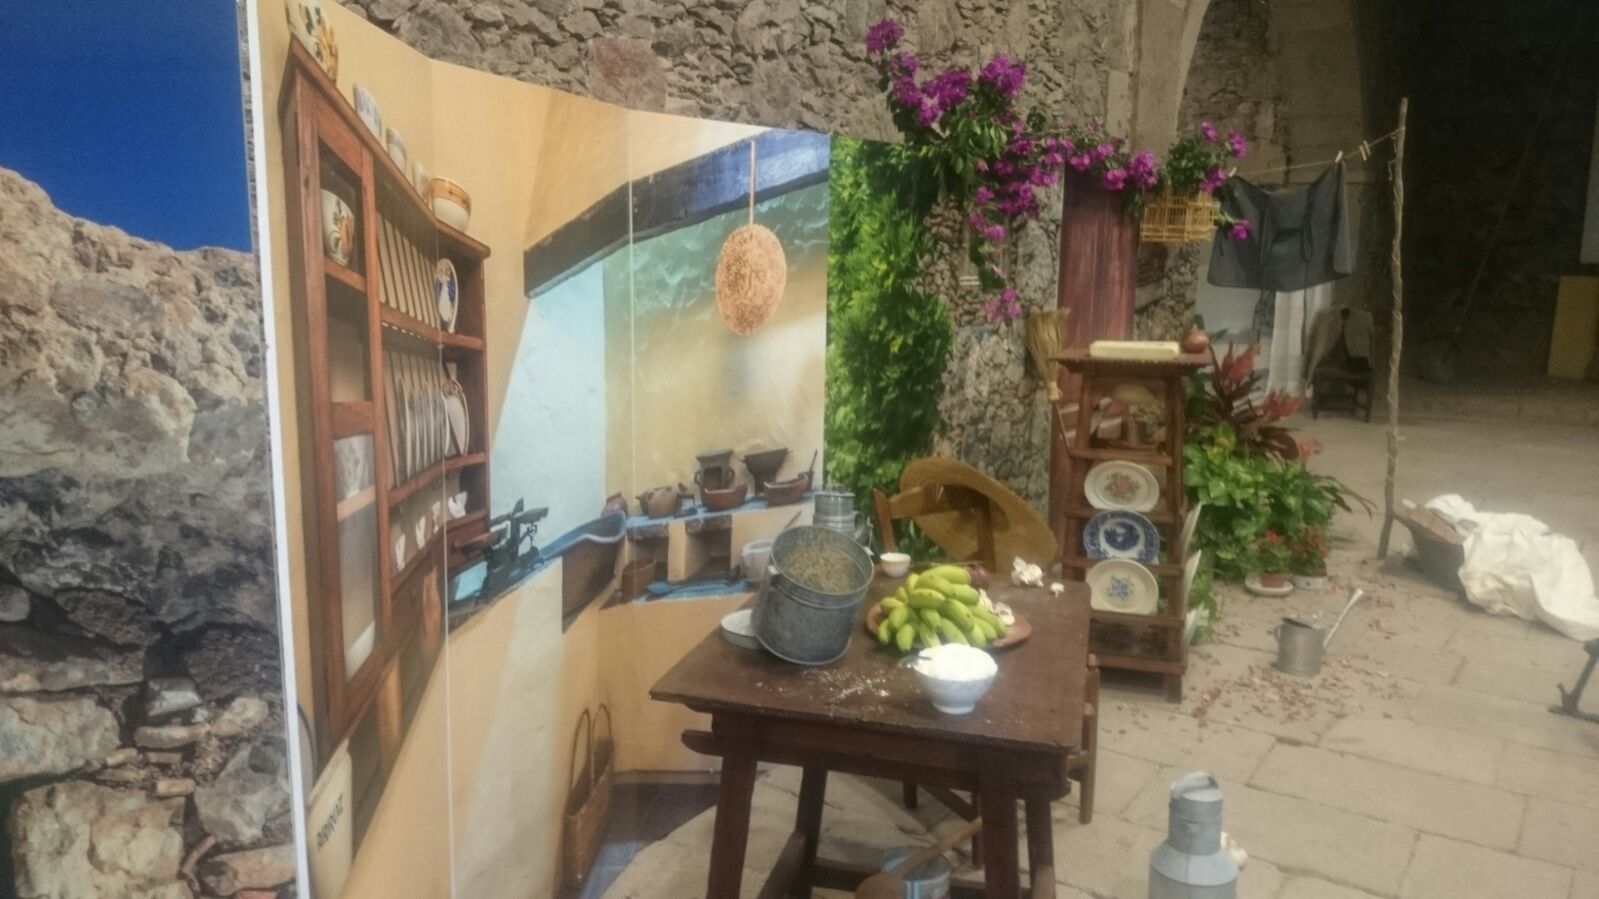 Muebles, loza, cestos y sombreros llenan la exposición de los oficios artesanos de Gran Canaria en una casa tradicional recreada